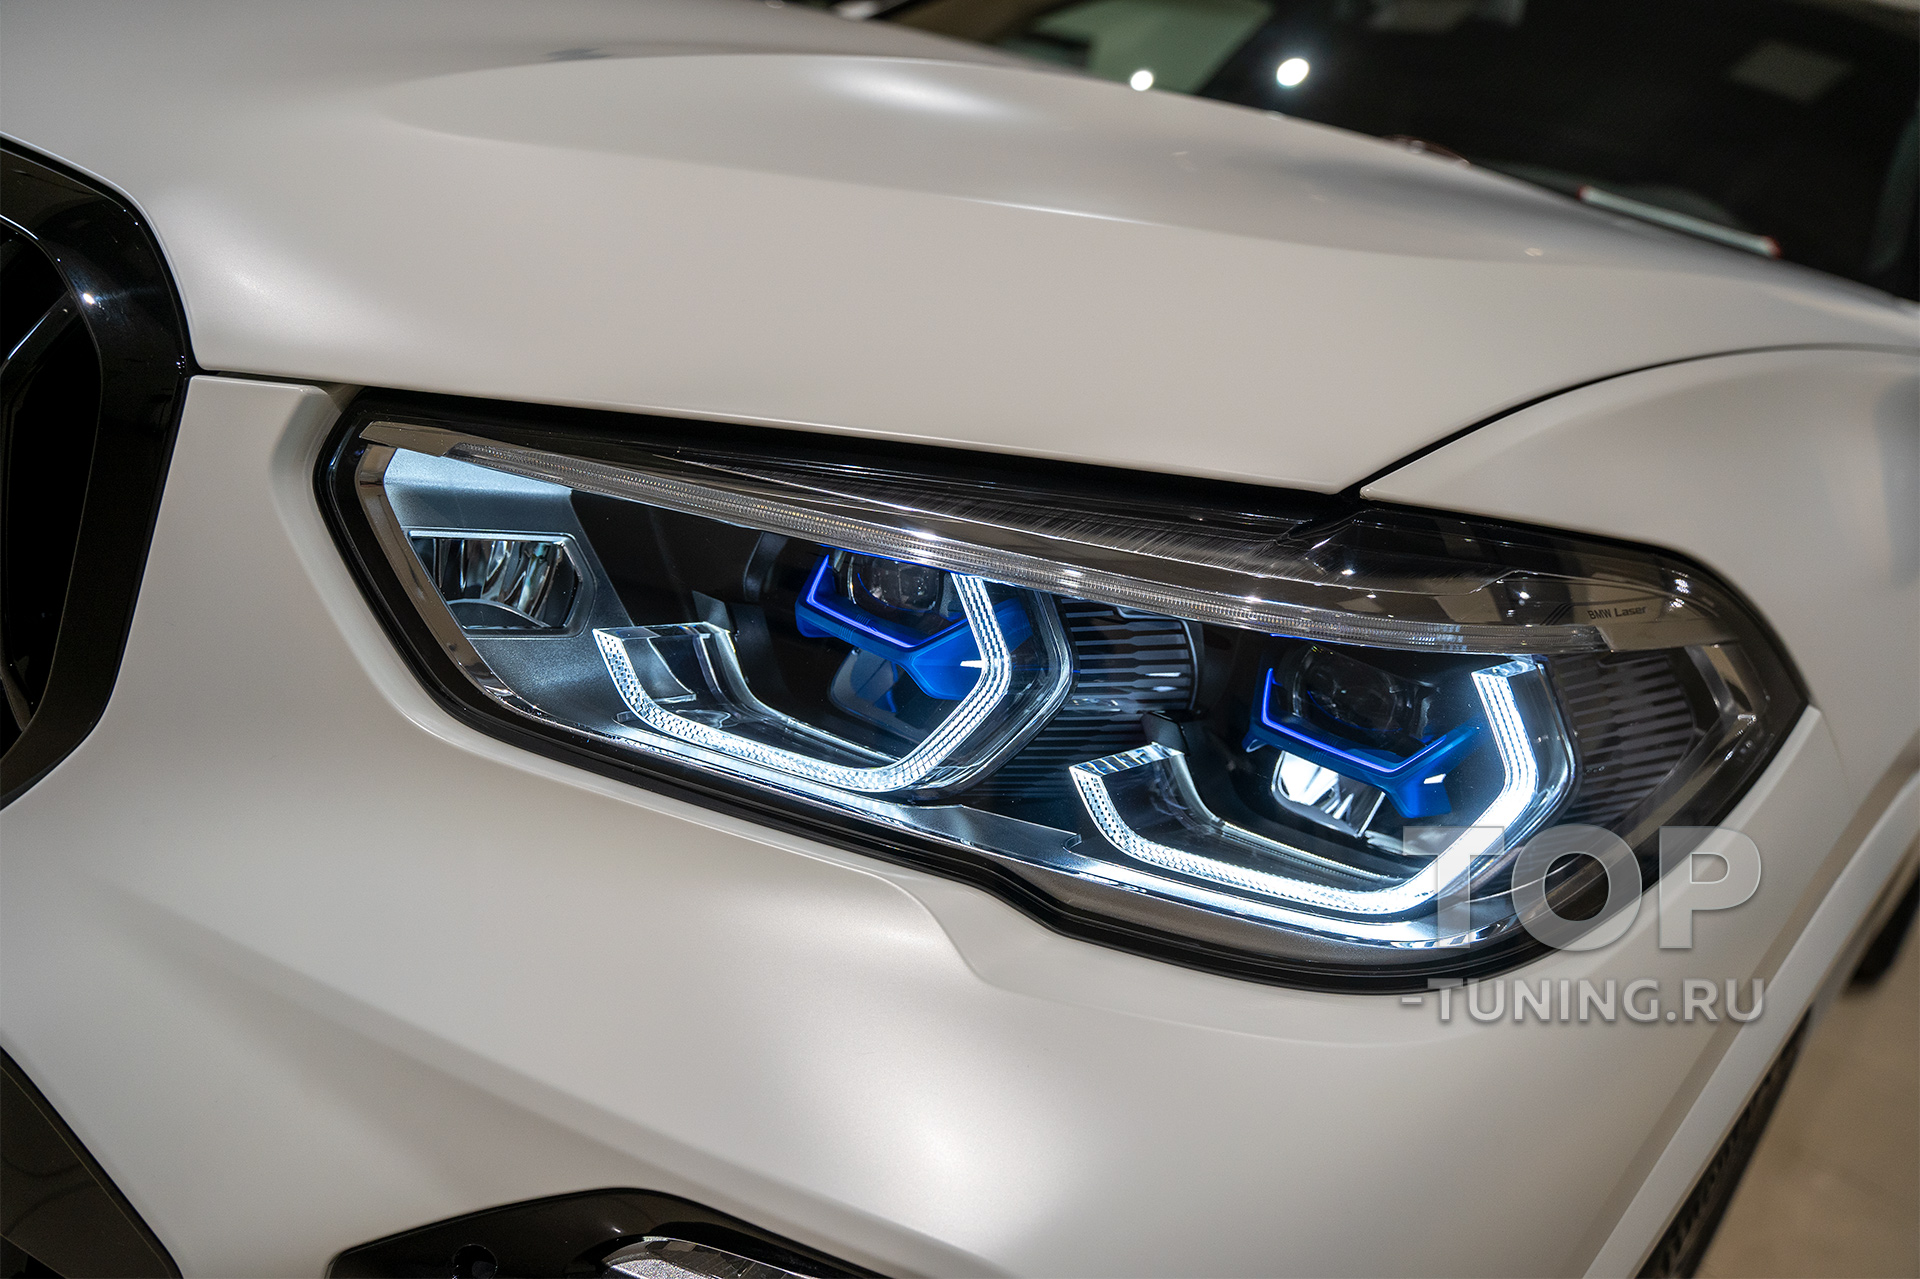 BMW X5 G05 – Пленка на фары оклейка – Максимальный уровень защиты оптики от сколов, царапин и песка